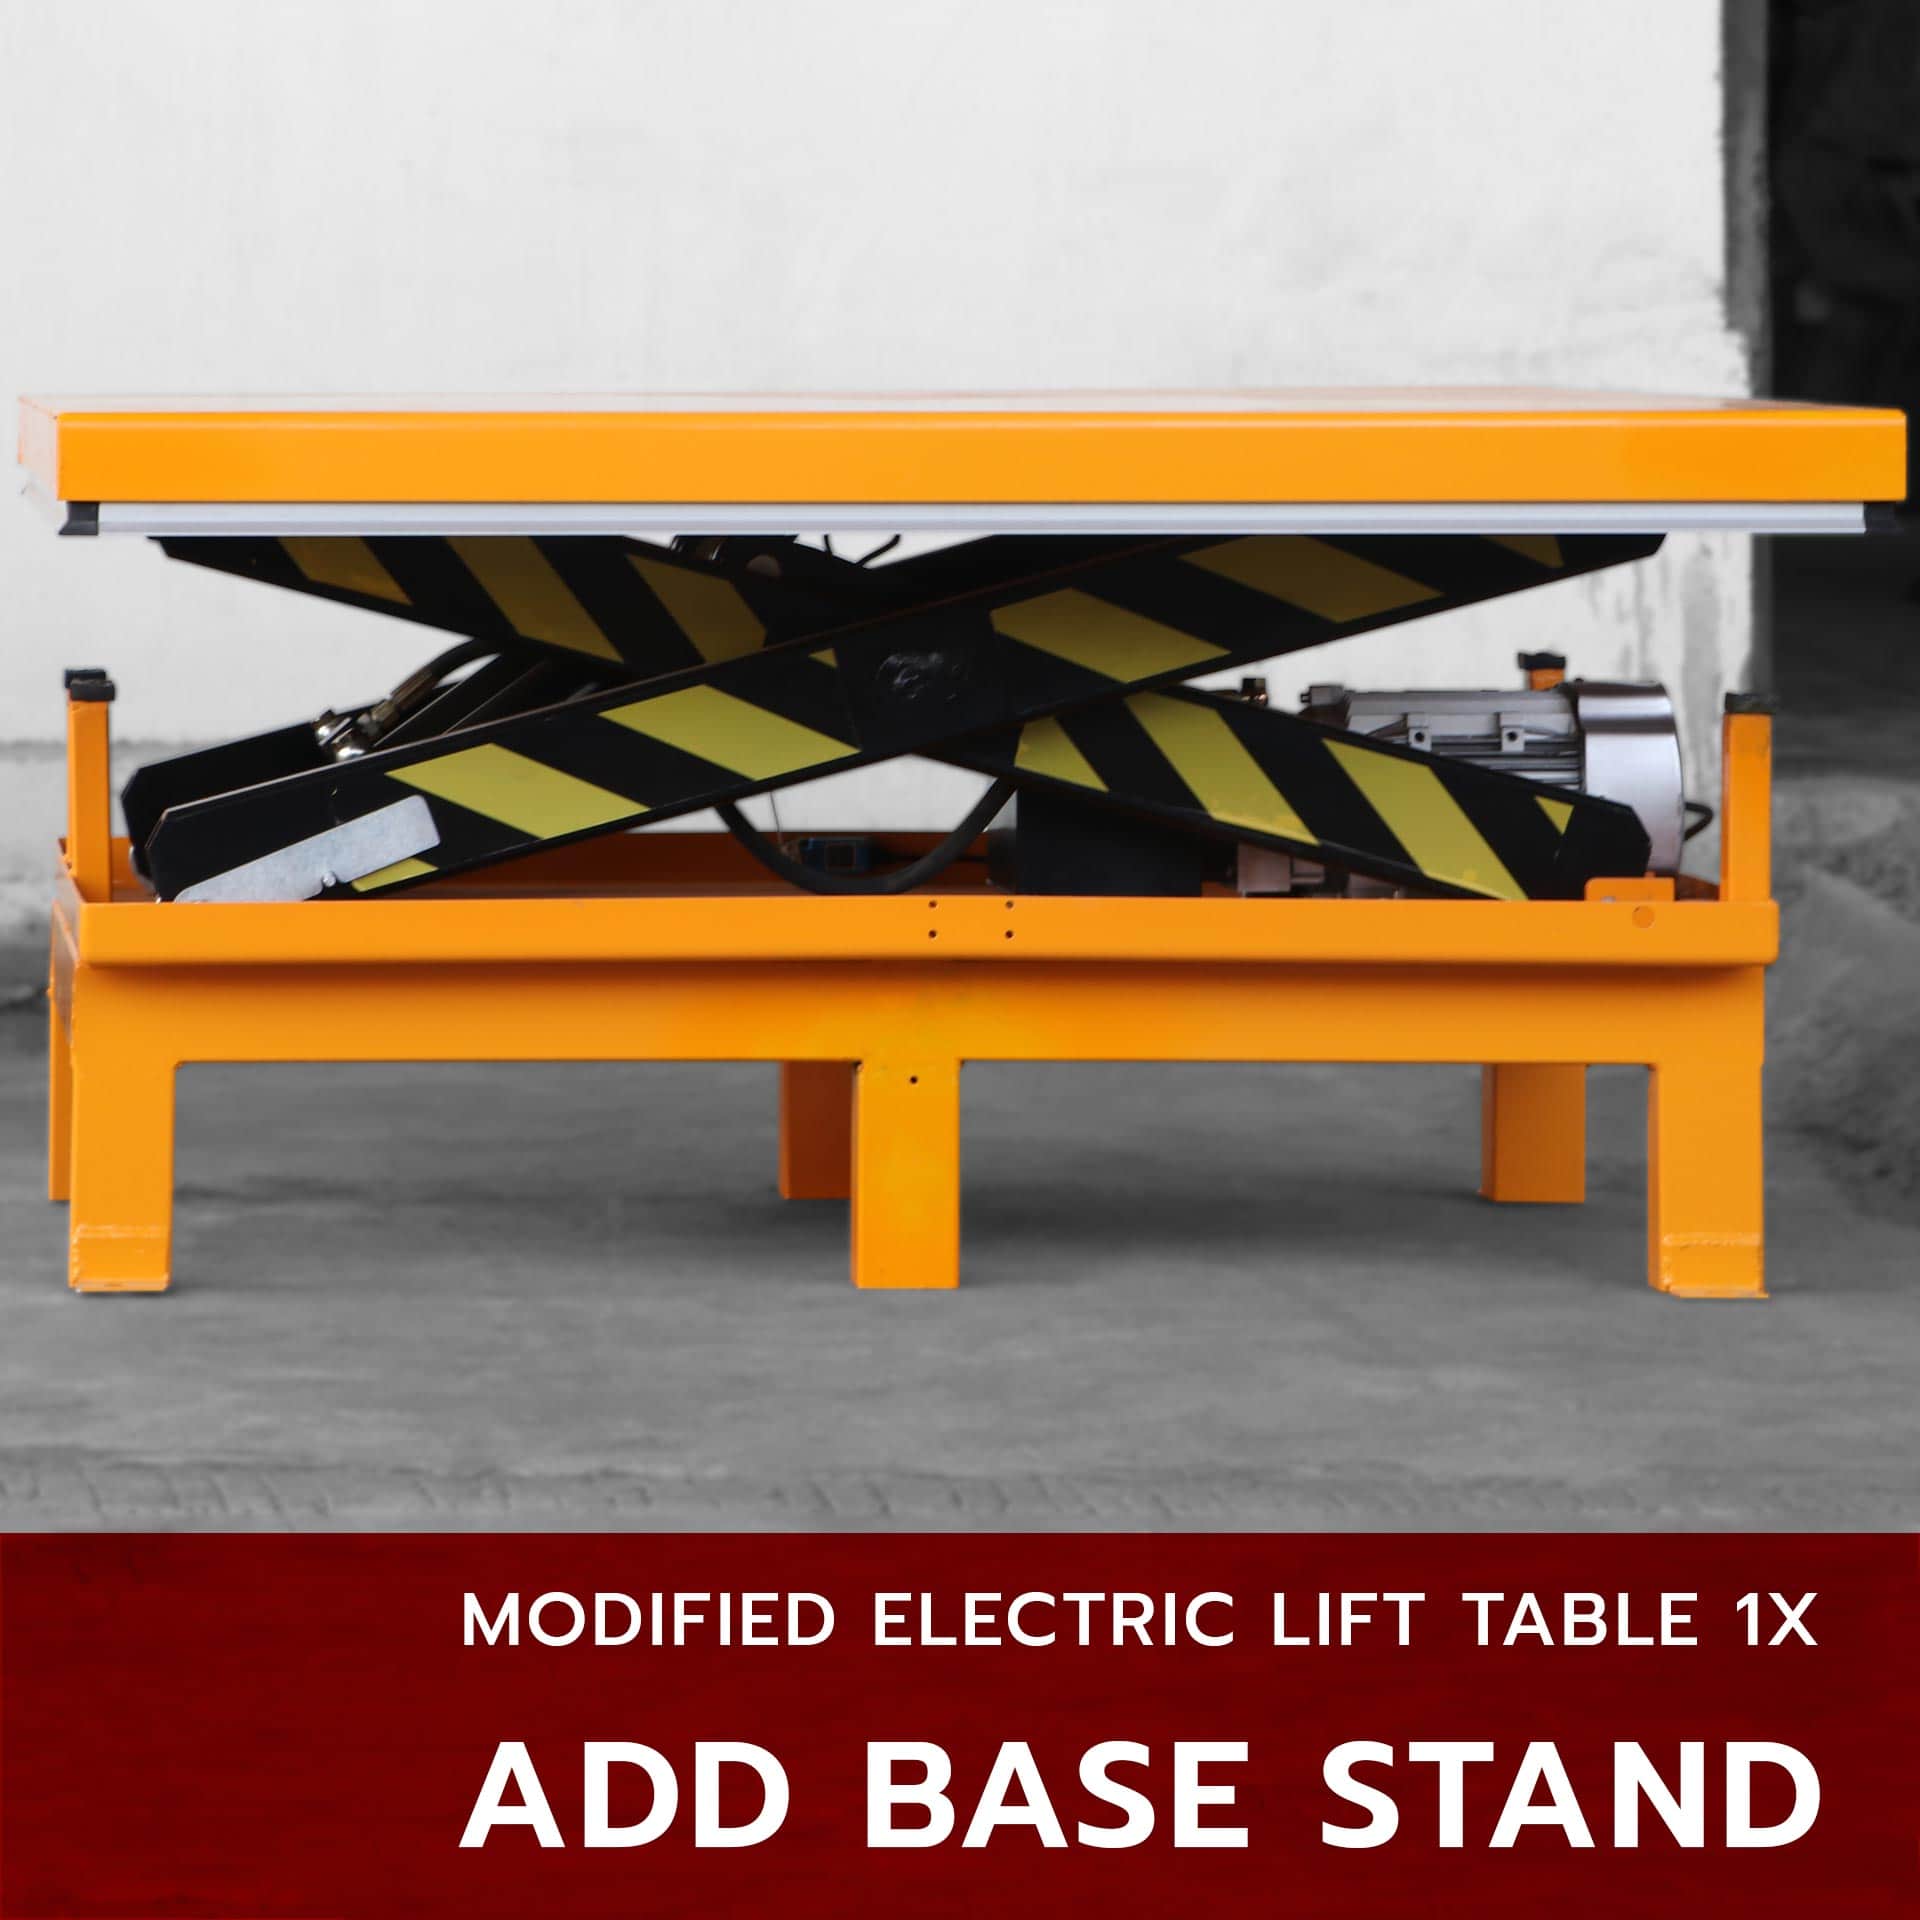 เพิ่มขา [modified] x-lift table 1x i ต่อขาเพิ่ม ผลิตหน้าโต๊ะใหม่